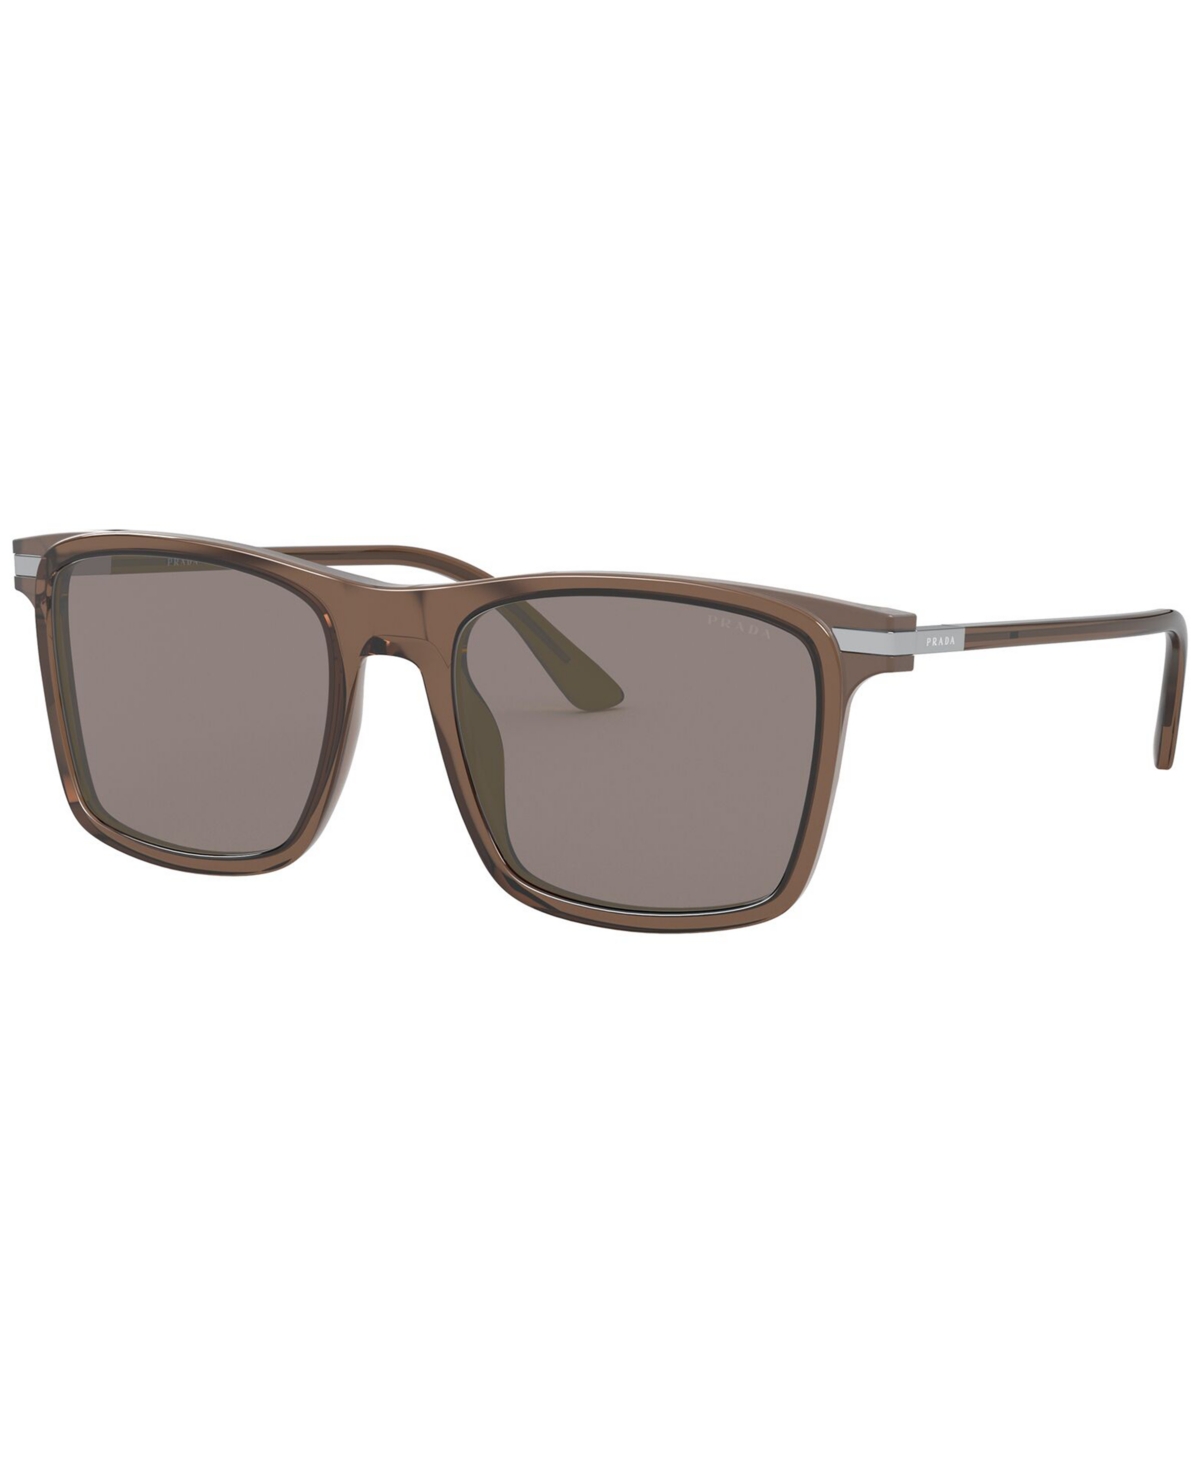 Prada Men's Sunglasses BROWN/GREY 0PR 19XS $188.50